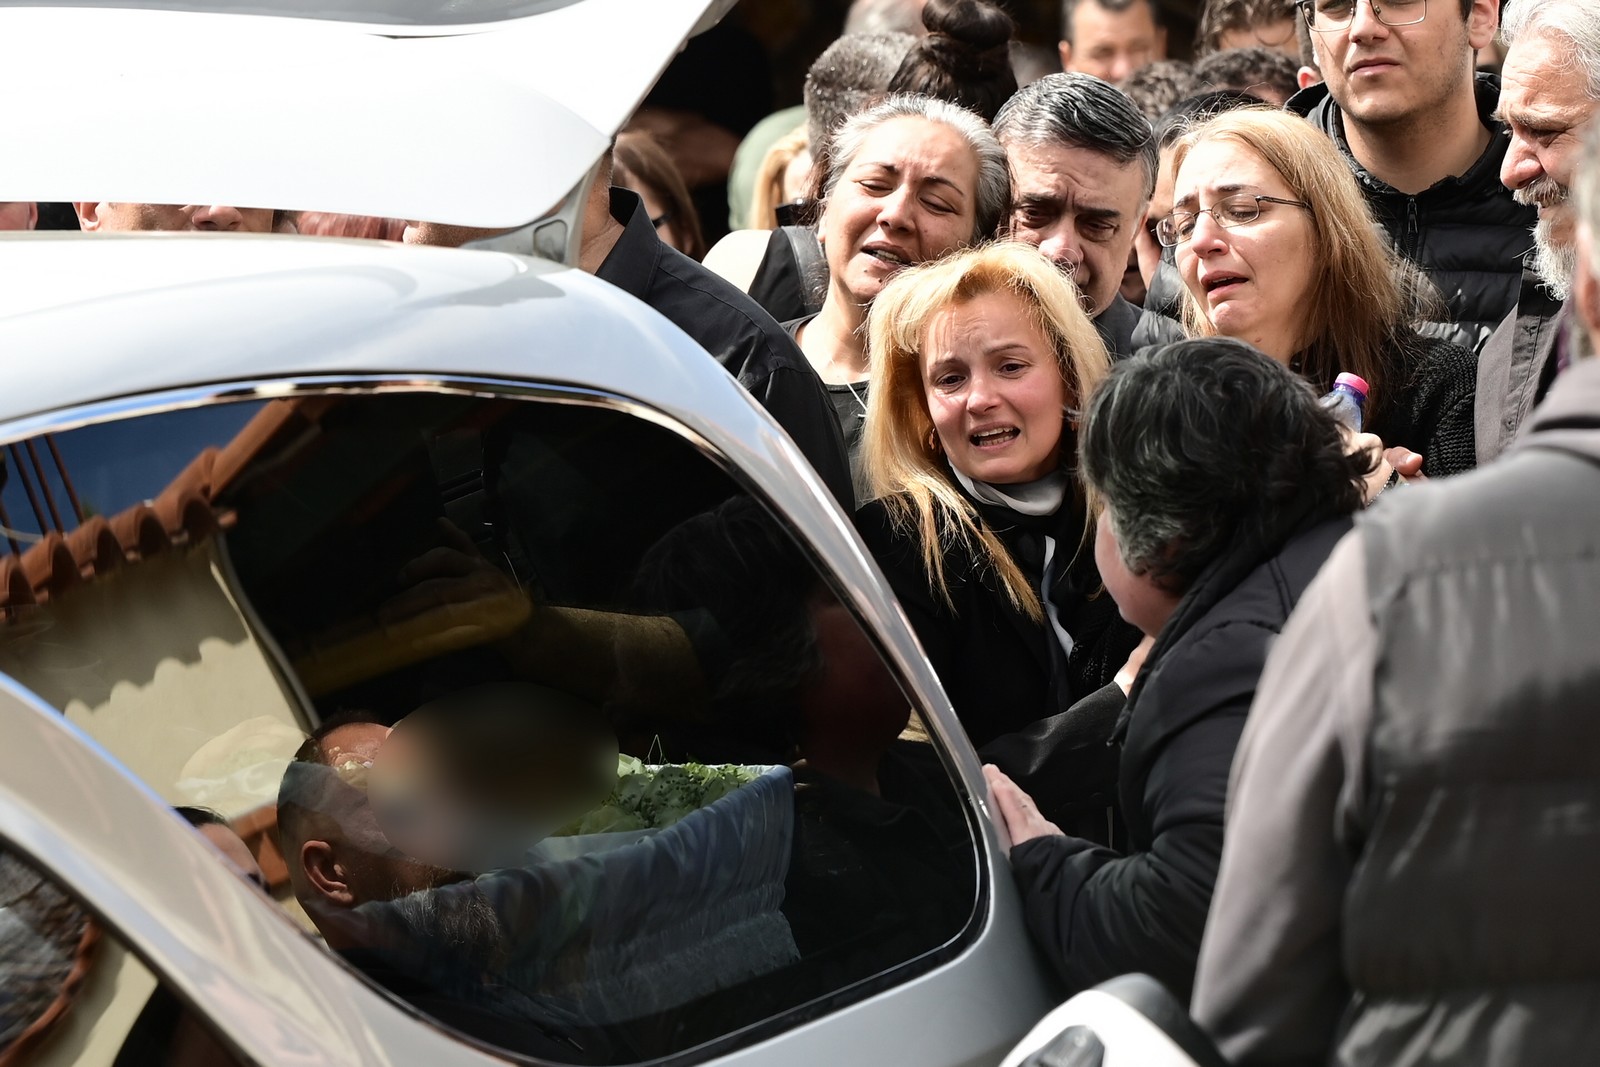 Κηδεία, από τον Ιερό Ναό Αγίου Νεκταρίου στα Άνω Λιόσια, της 28χρονης Κυριακής που έπεσε νεκρή μετά από την επίθεση του πρώην συντρόφου της έξω από Αστυνομικό Τμήμα των Αγίων Αναργύρων